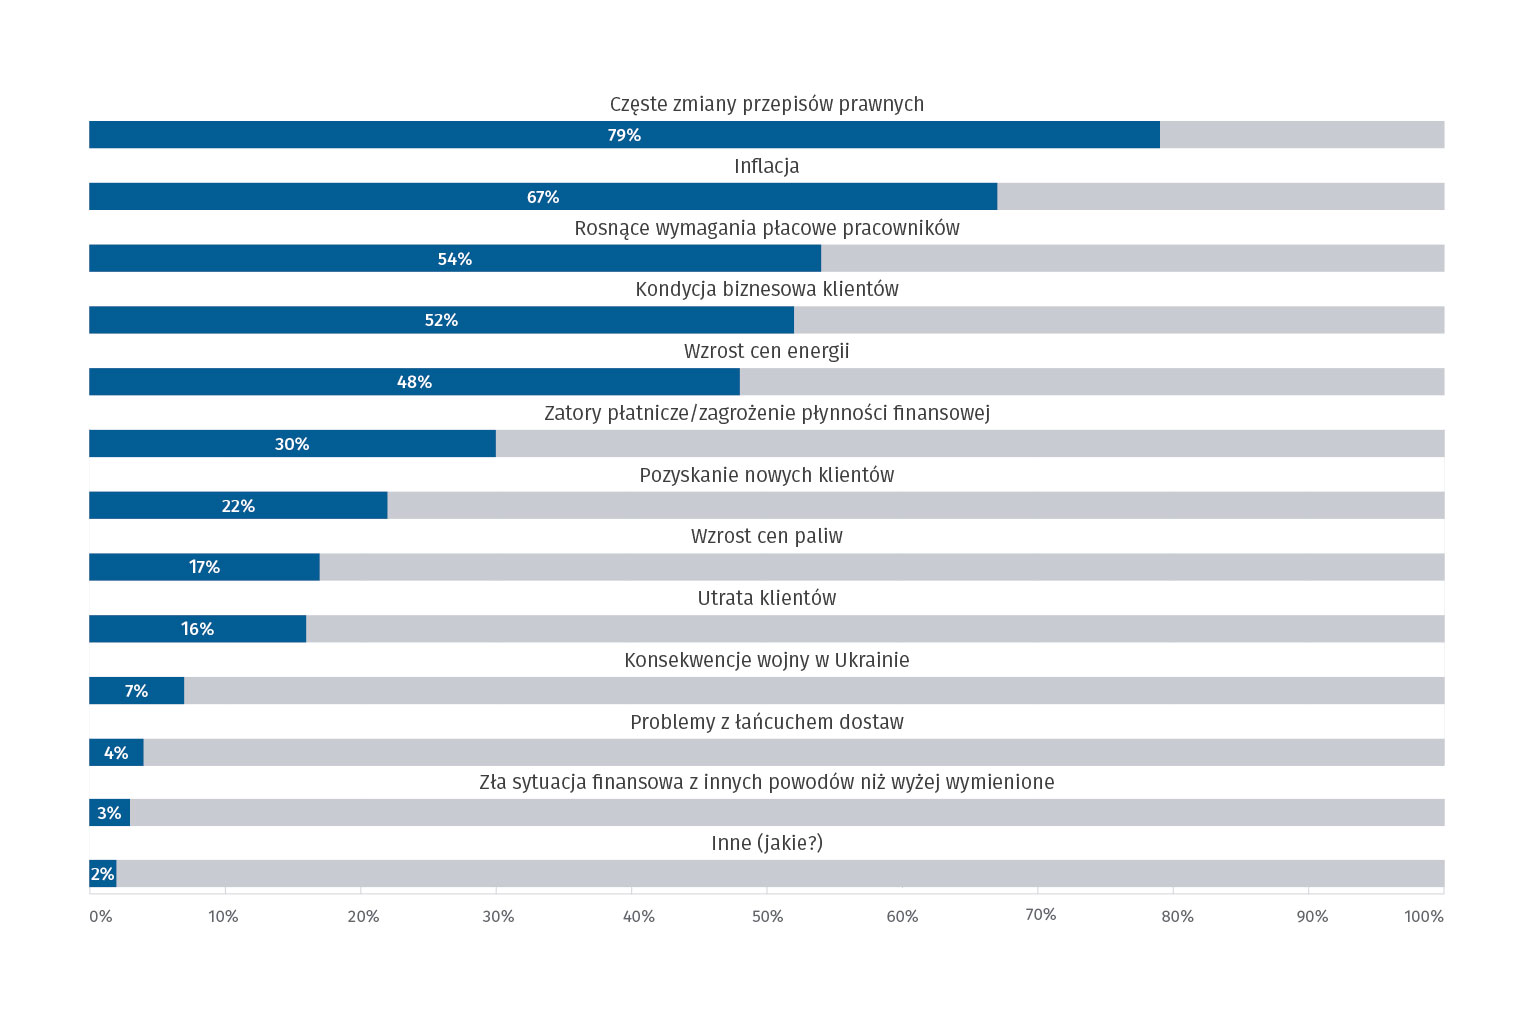 Wśród wyzwań najwięcej respondentów wskazuje częste zmiany w prawie (79%). Istotną rolę w tej ocenie odegrał Polski Ład, co pokazały odpowiedzi na pytania dotyczące jego oceny.